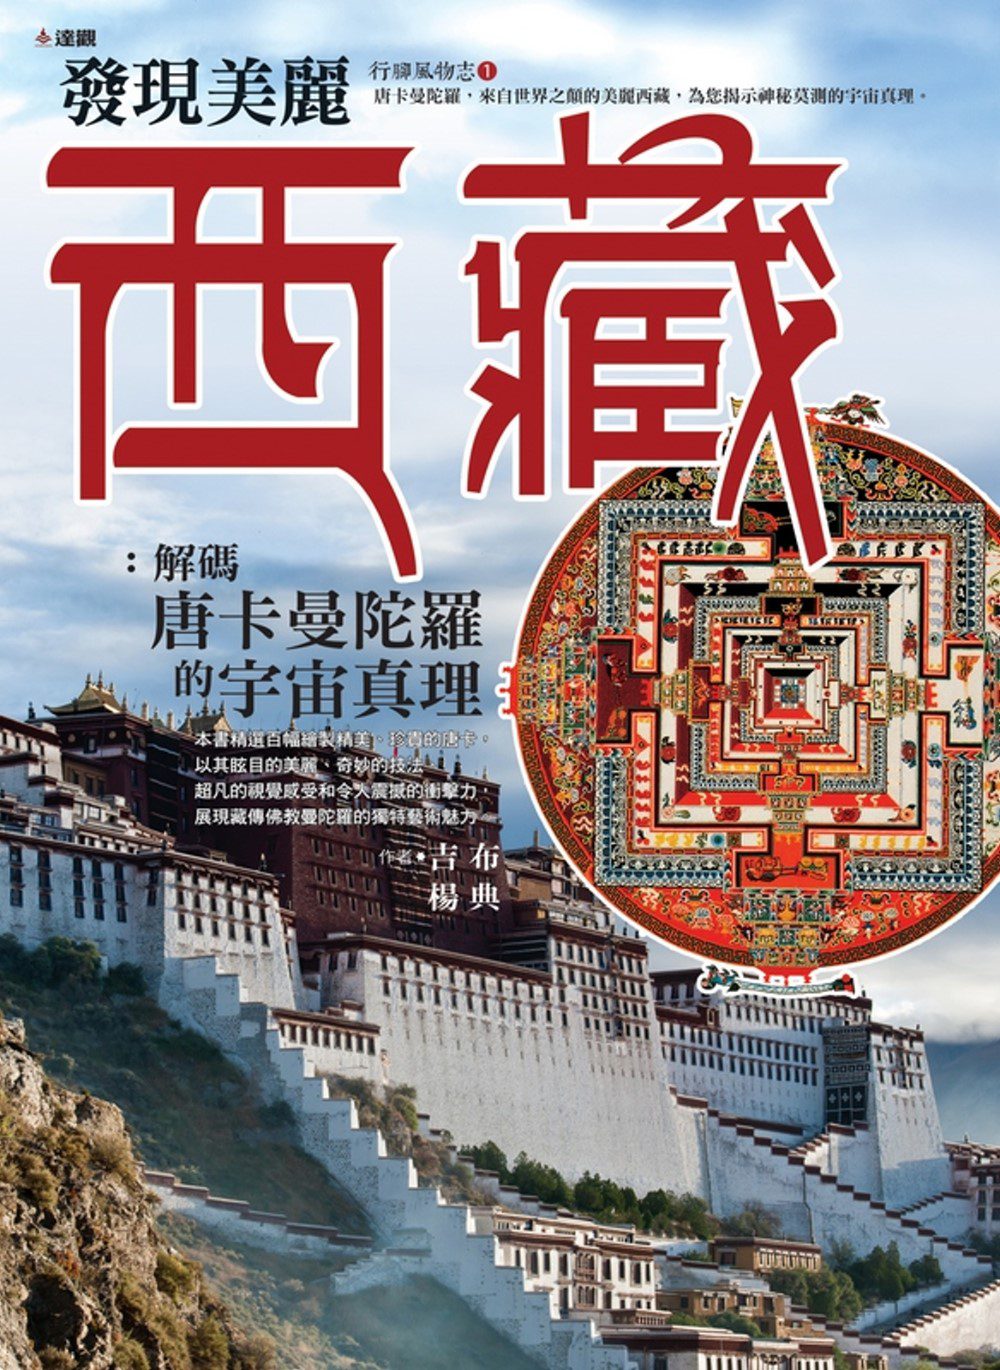 發現美麗西藏：解碼唐卡曼陀羅中的宇宙真理